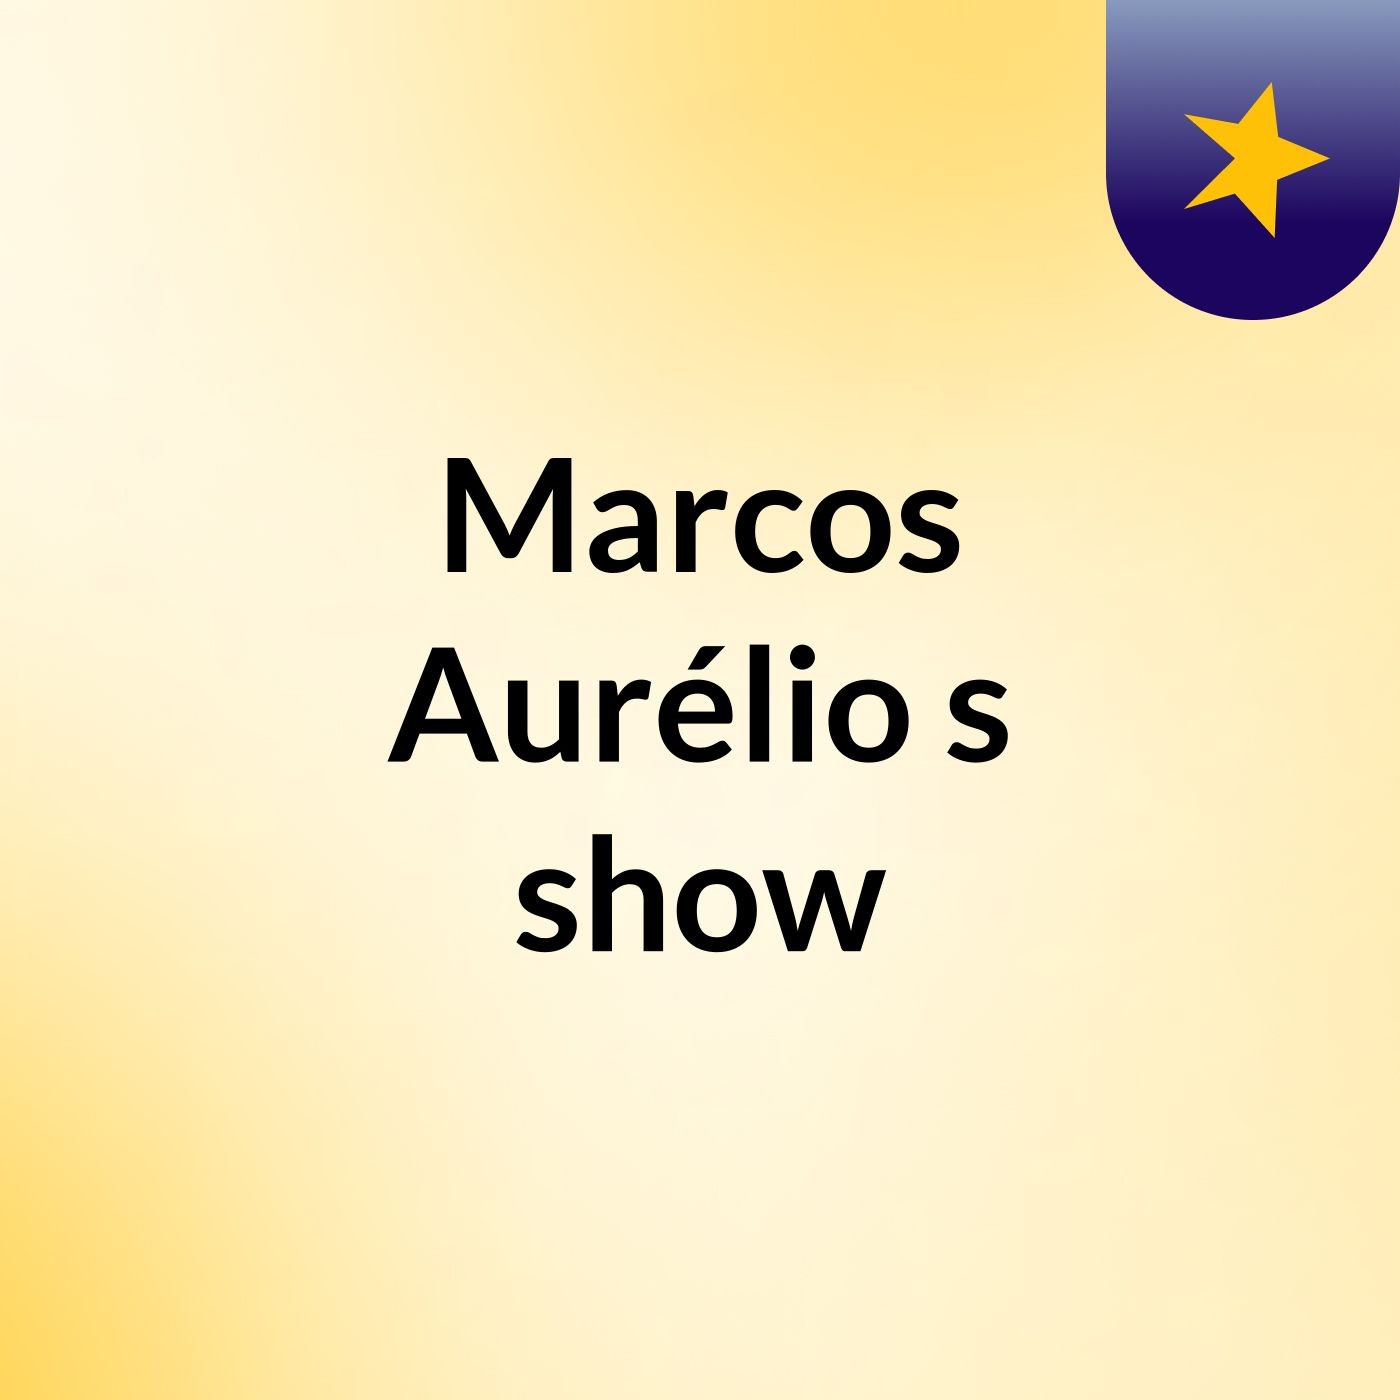 Marcos Aurélio's show